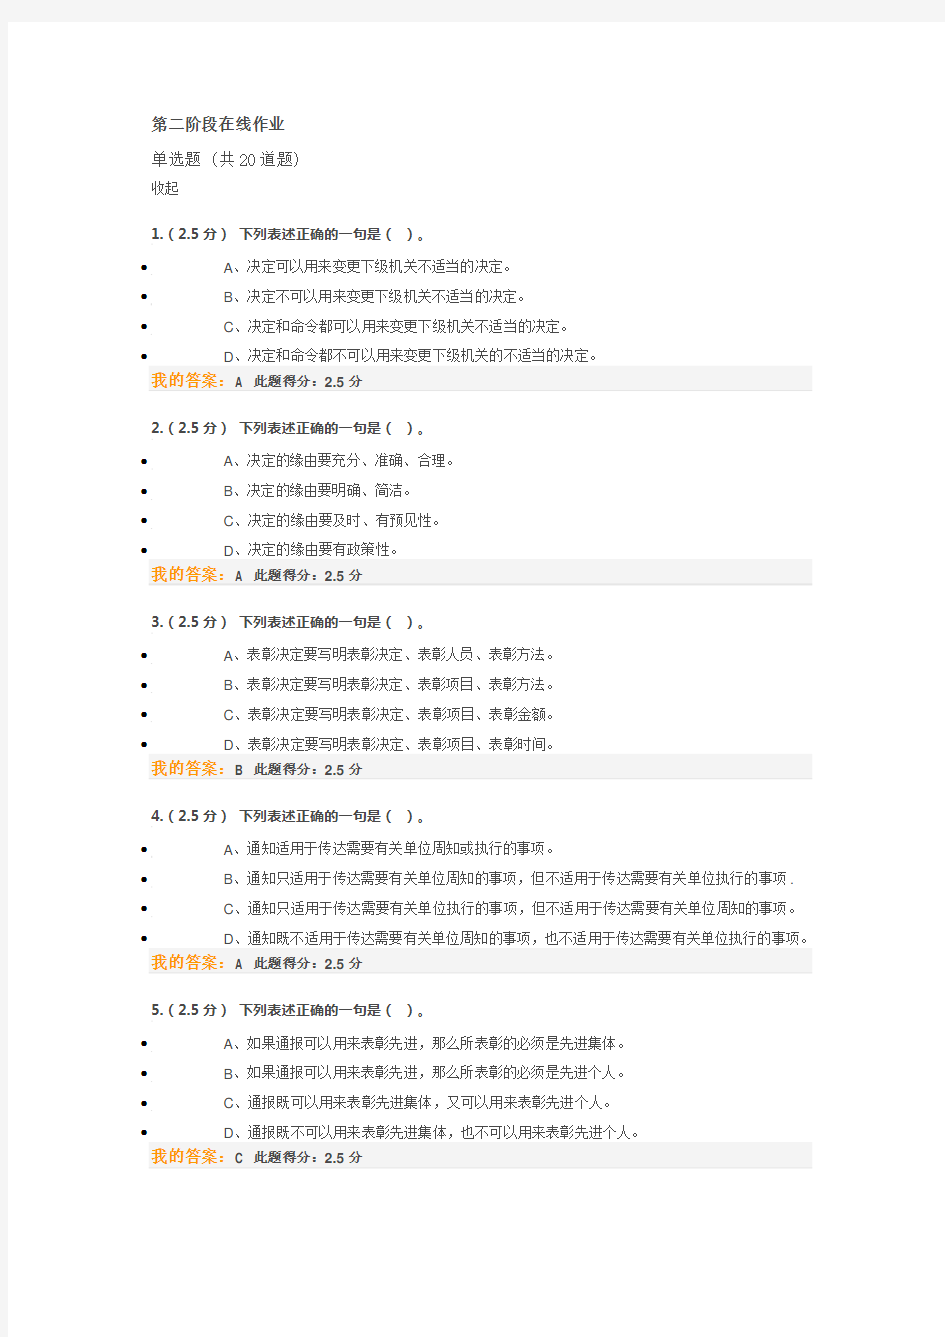 2015中国石油大学(北京)现代应用文写作第二 阶段在线作业